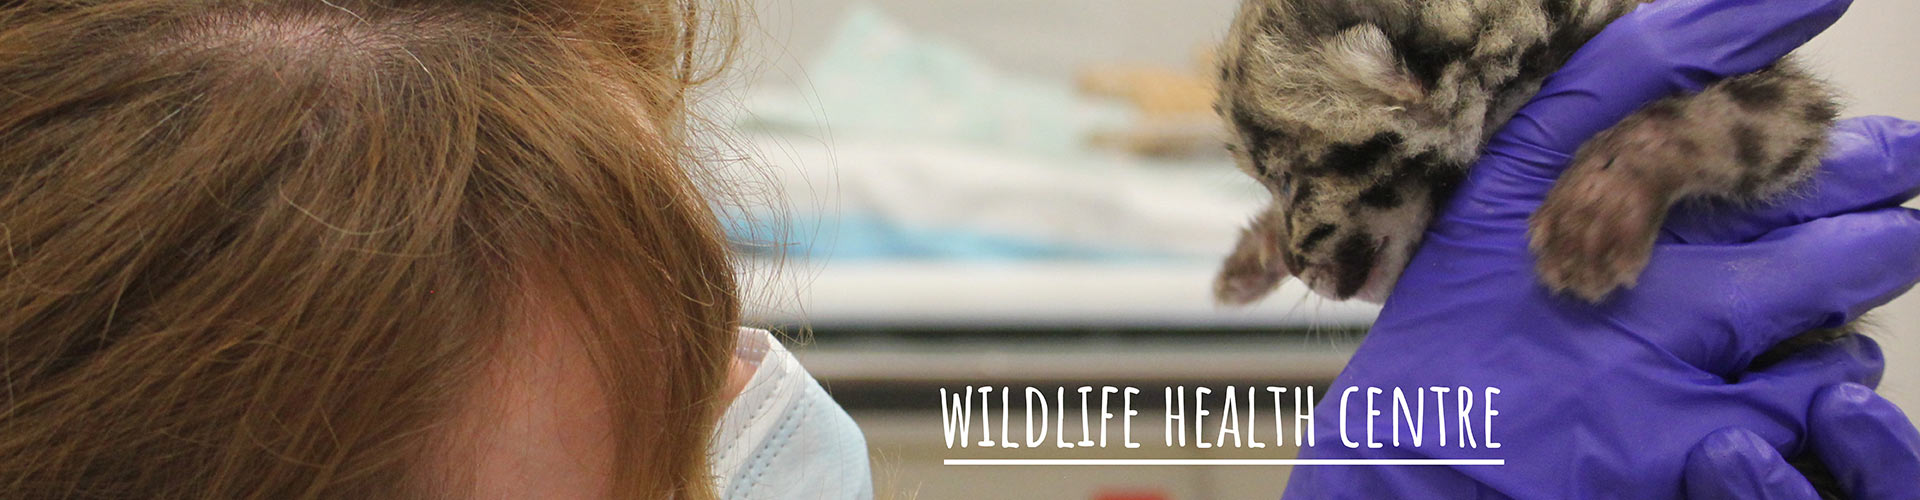 Wild Life Health Centre - Press